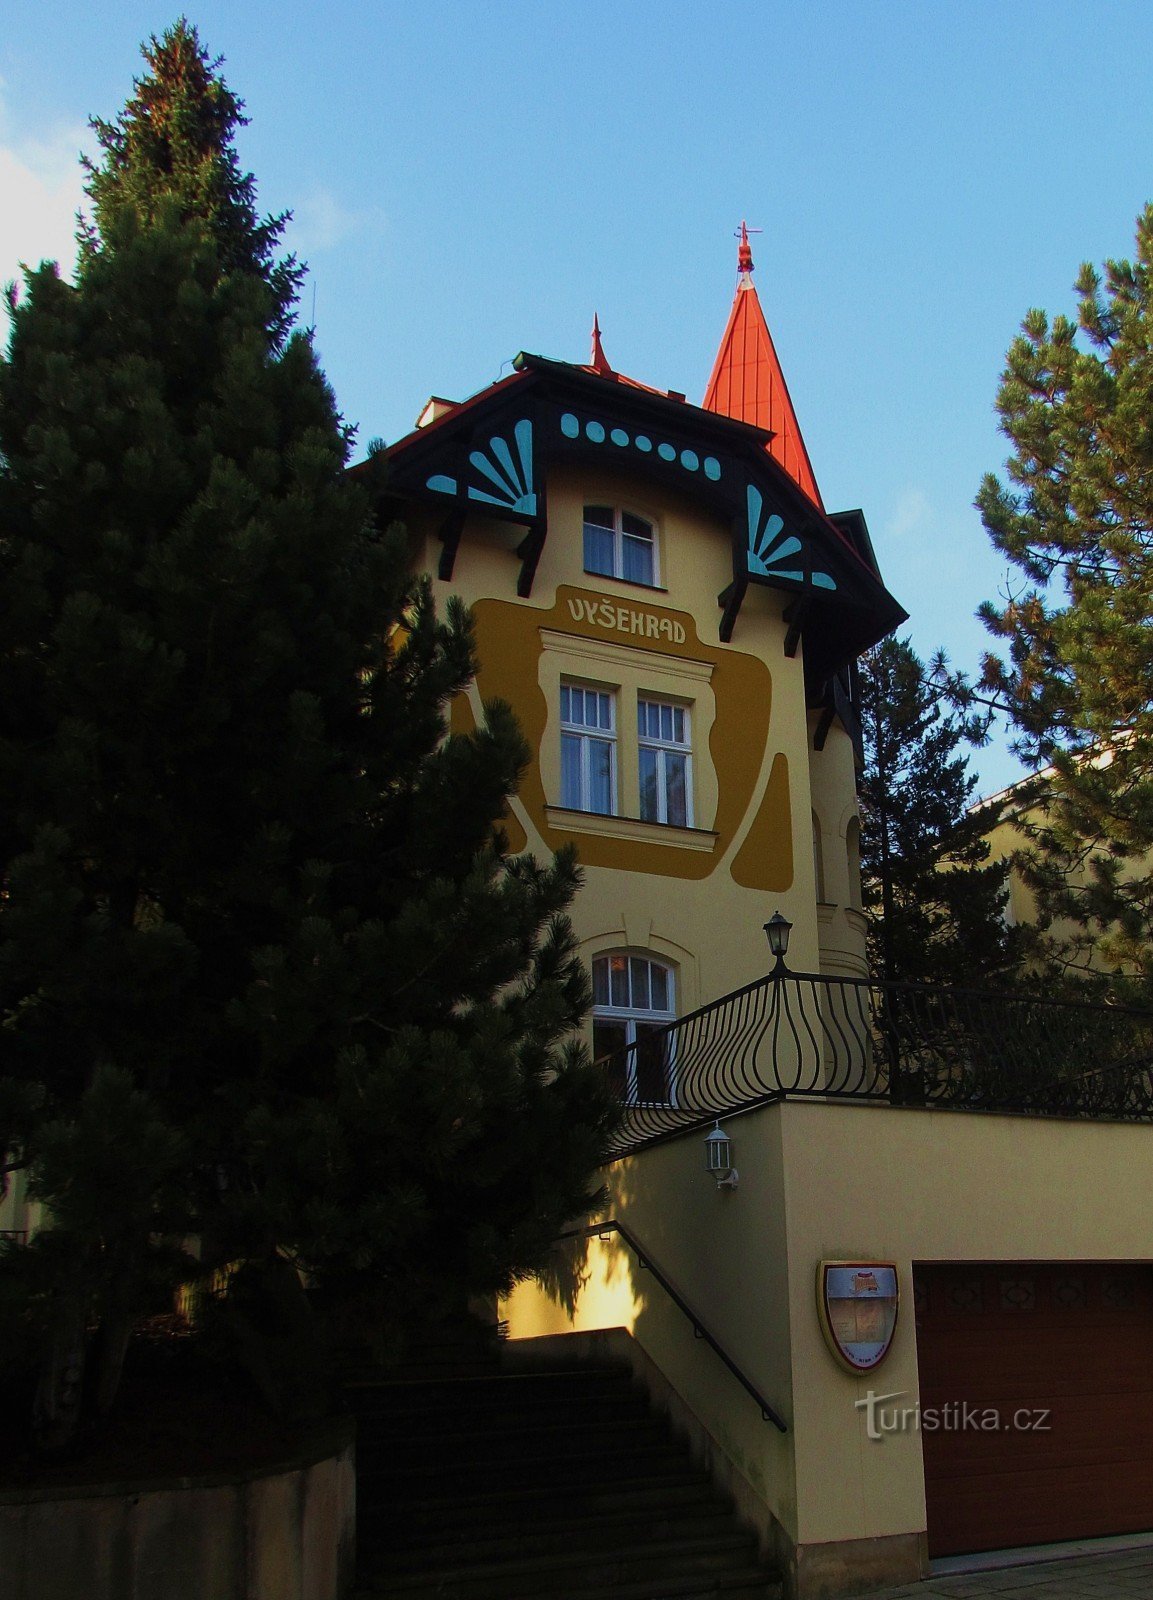 Hotel Vyšehrad din Luhačovice